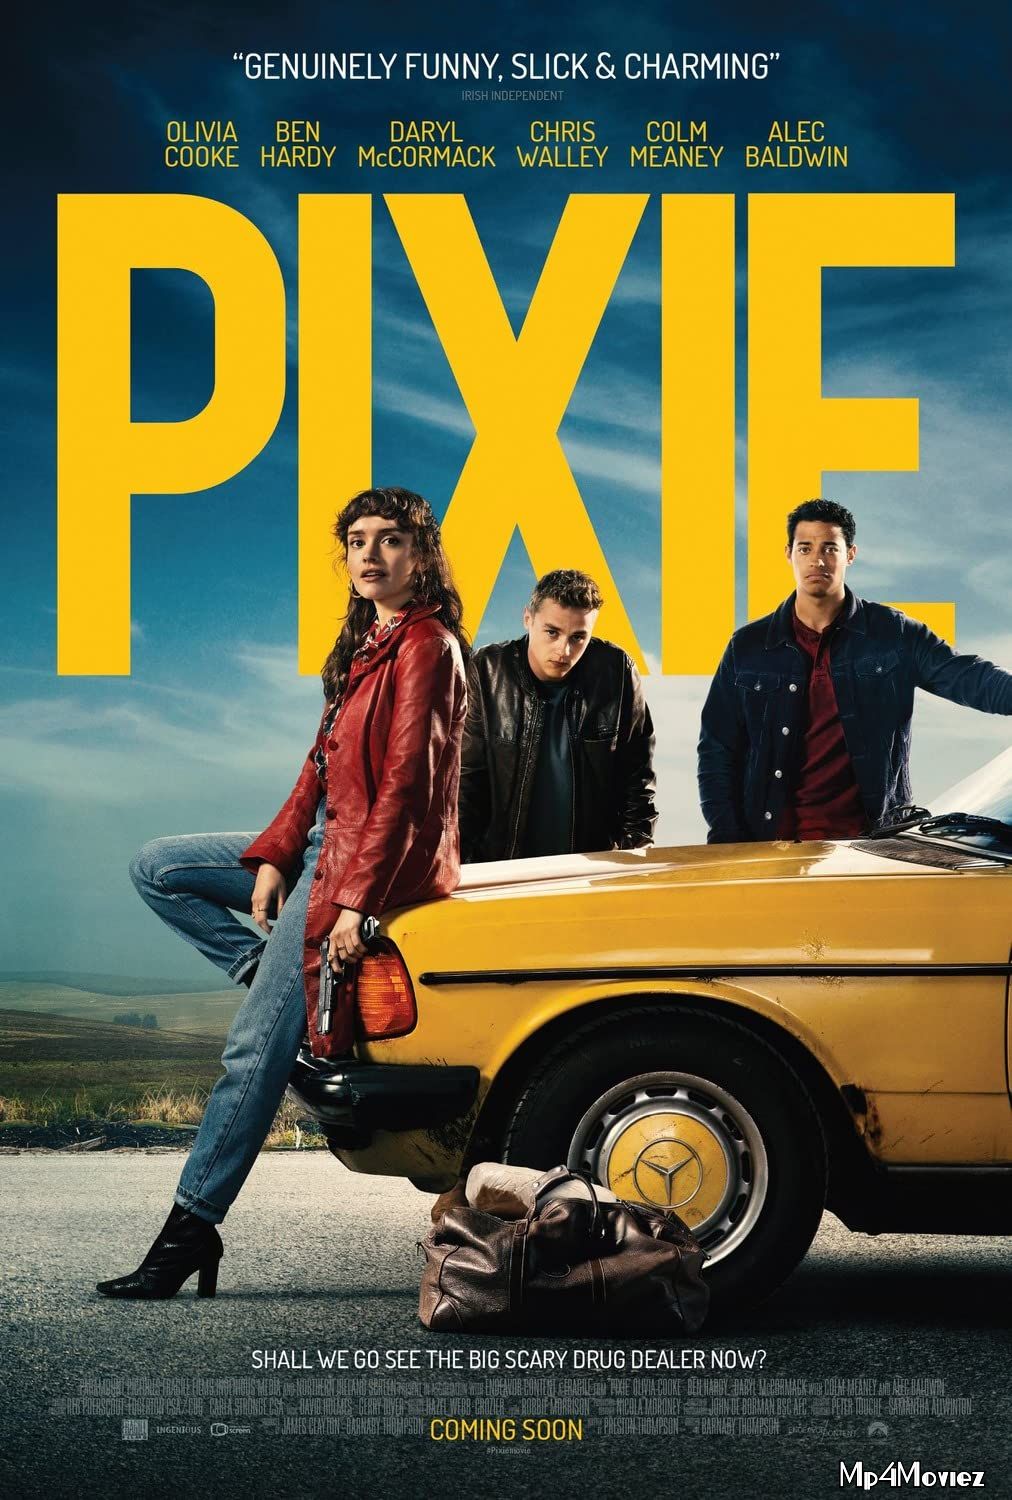 Pixie 2020 Hindi Full Movie HDRip download full movie